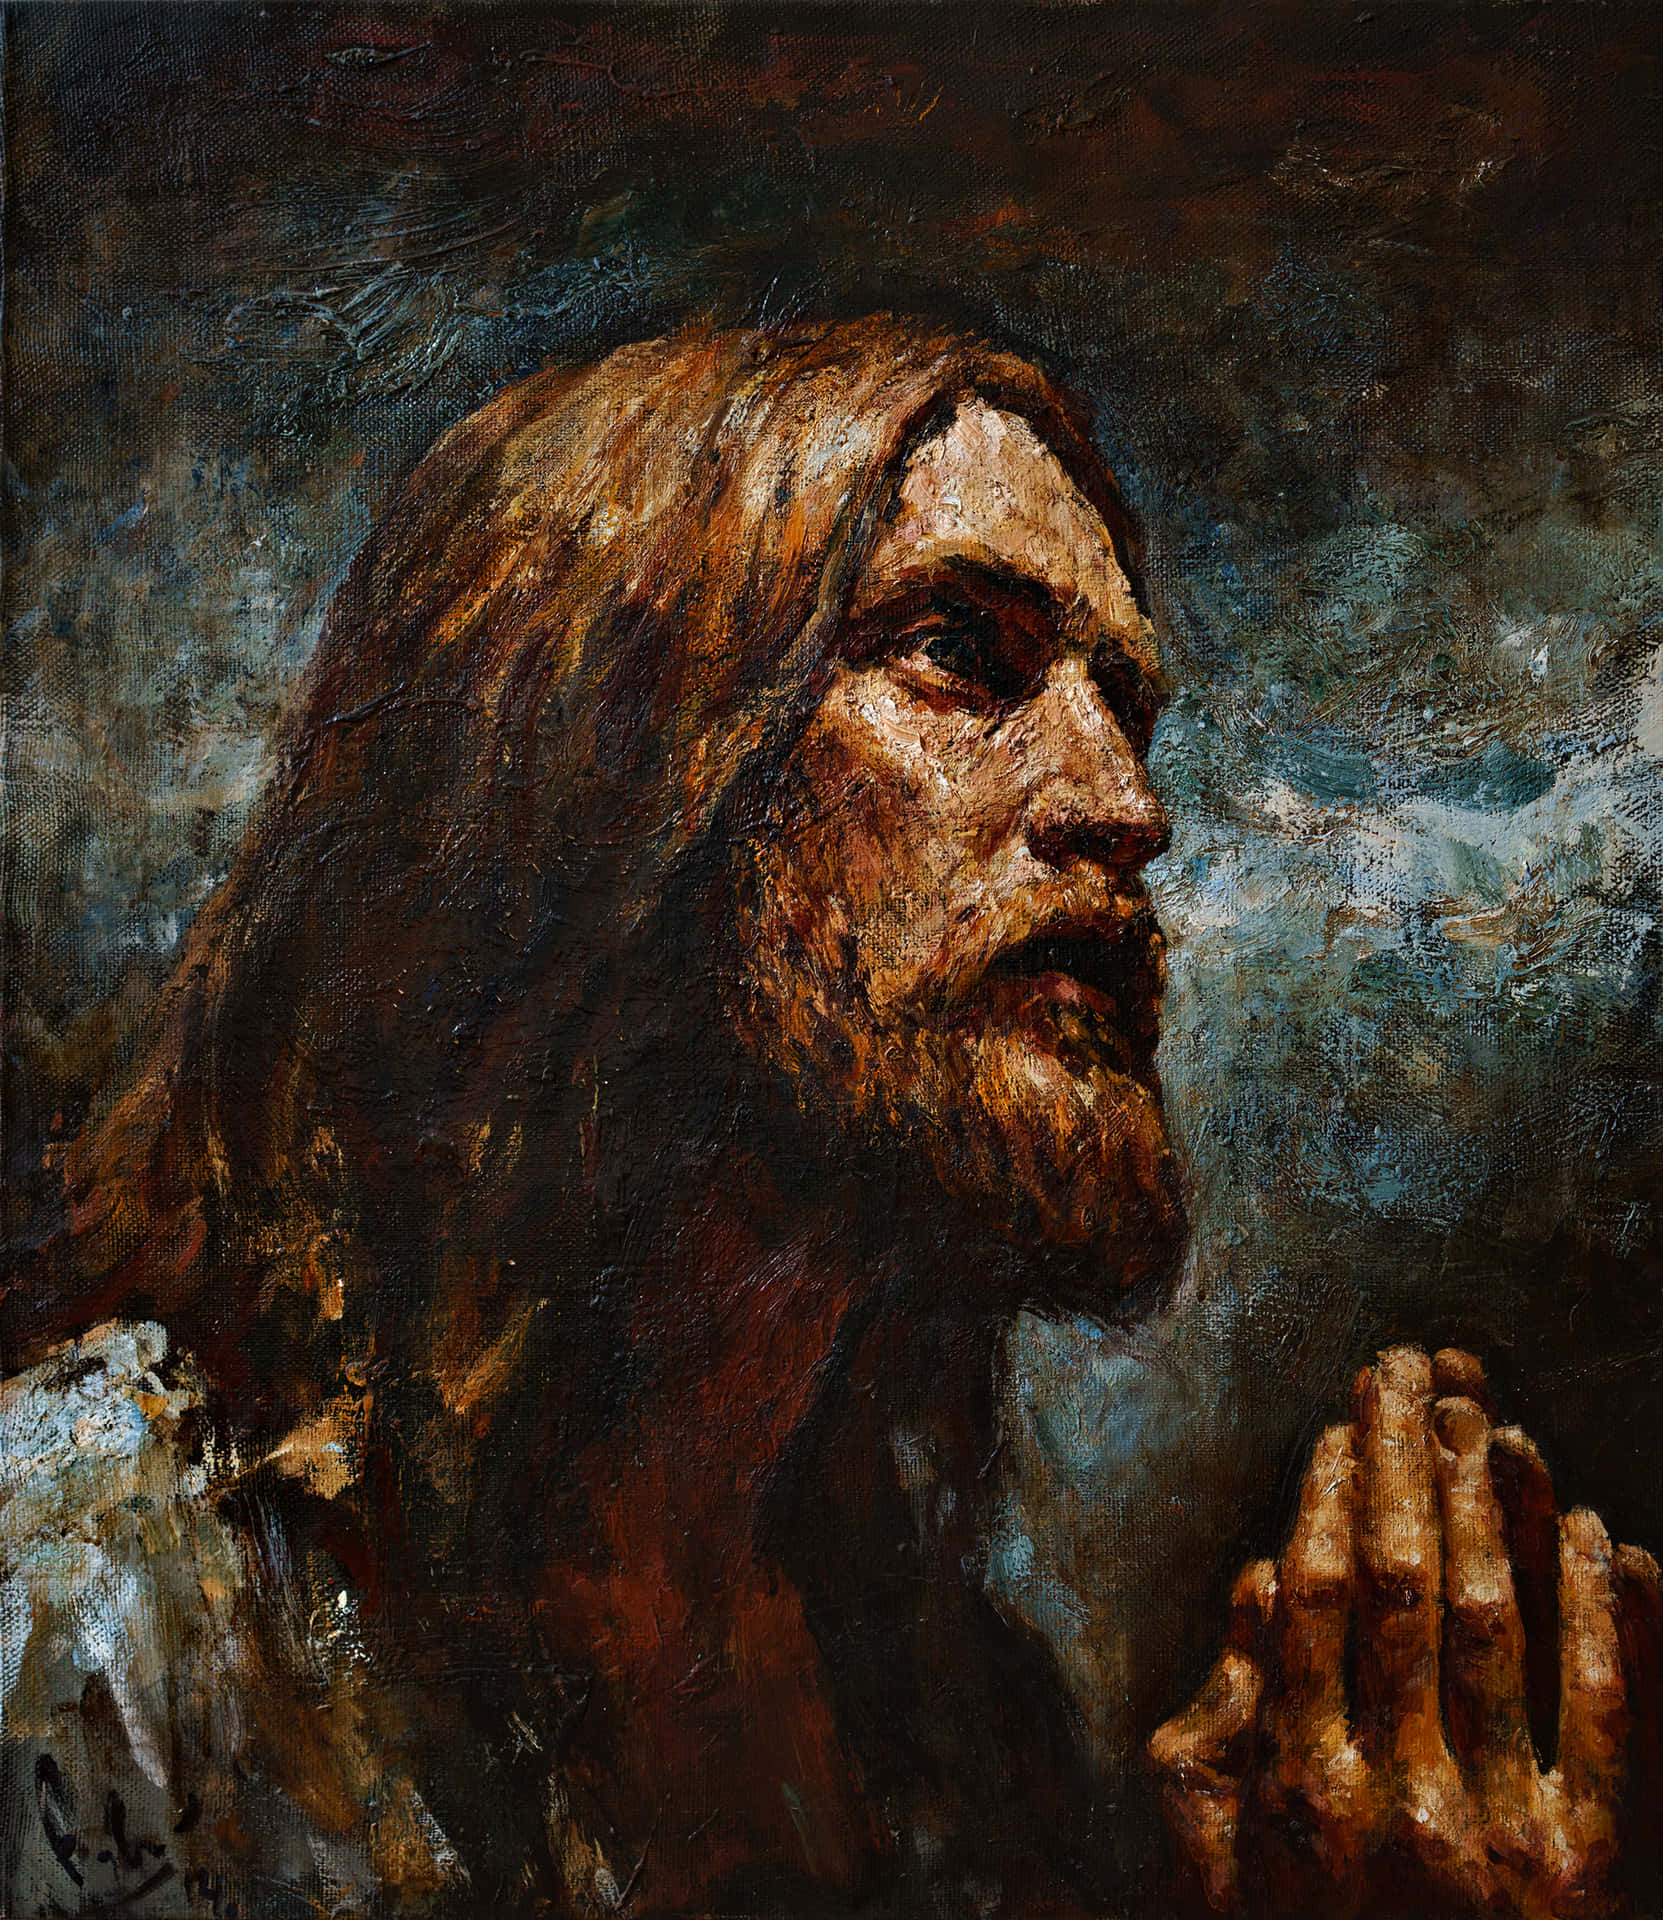 Jesusbetet Im Hinblick Auf Den Willen Gottes. Wallpaper